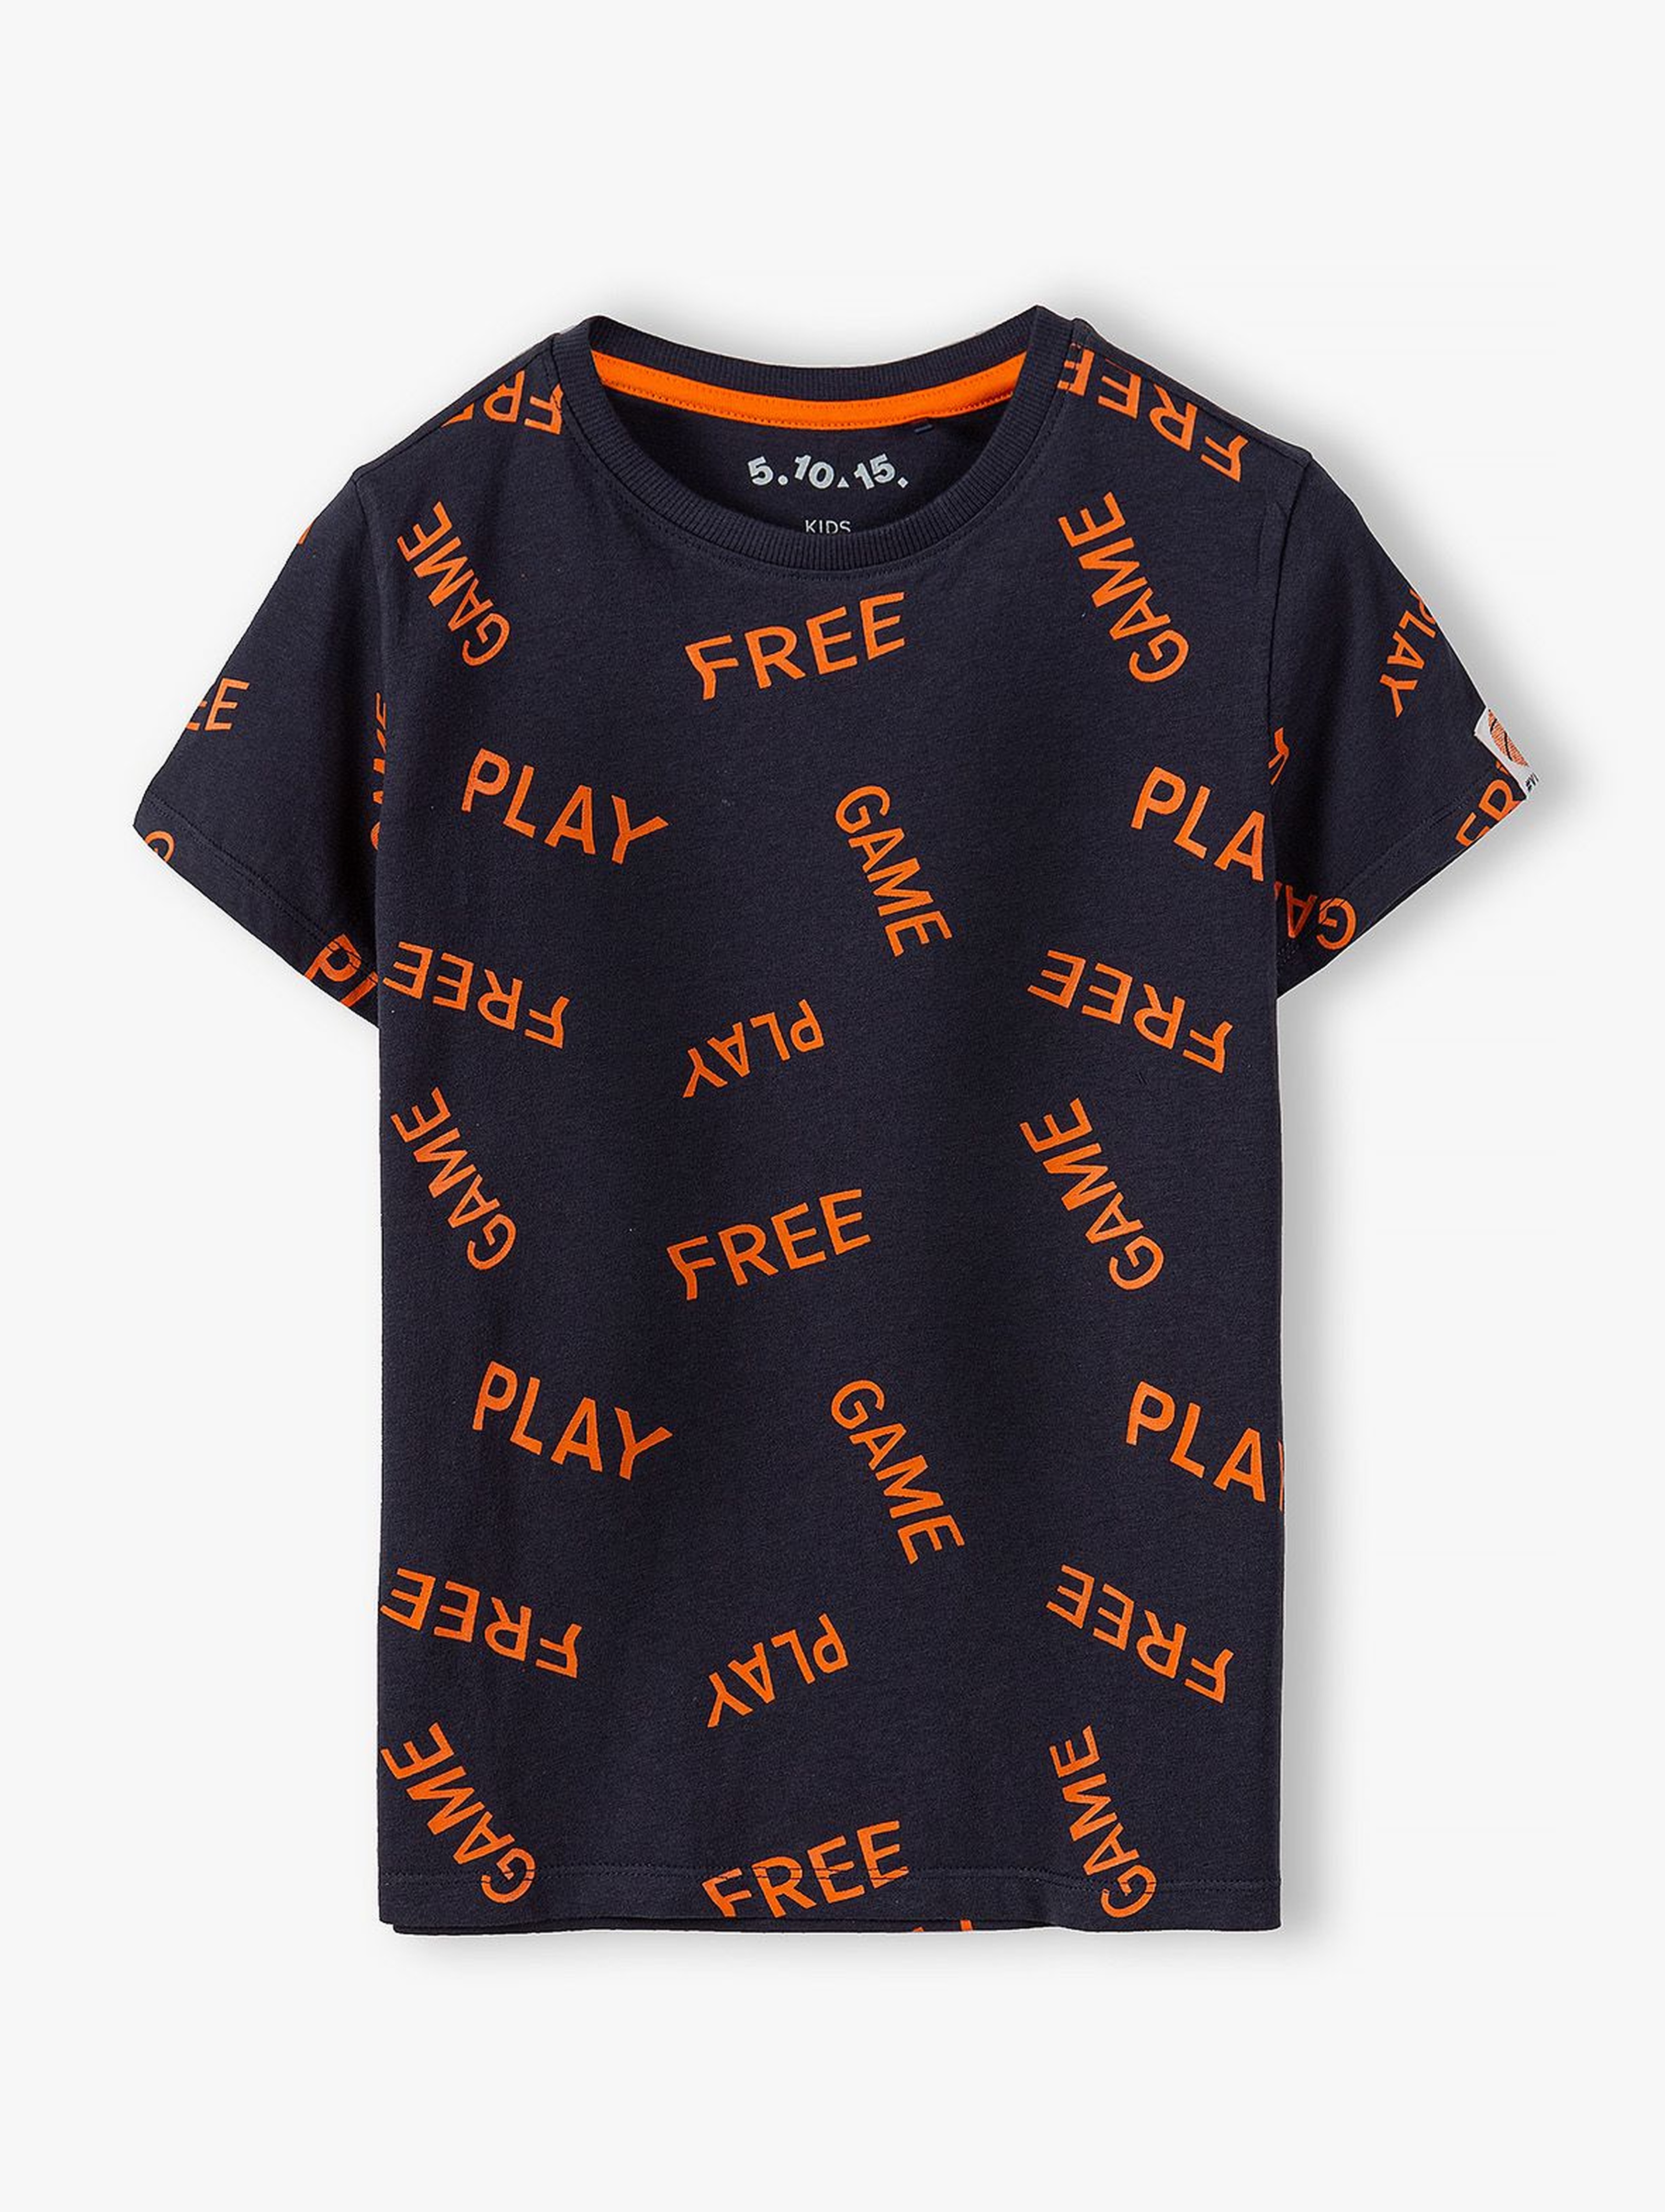 Bawełniany t-shirt chłopięcy w kolorze czarnym z kontrastowymi pomarańczowymi napisami